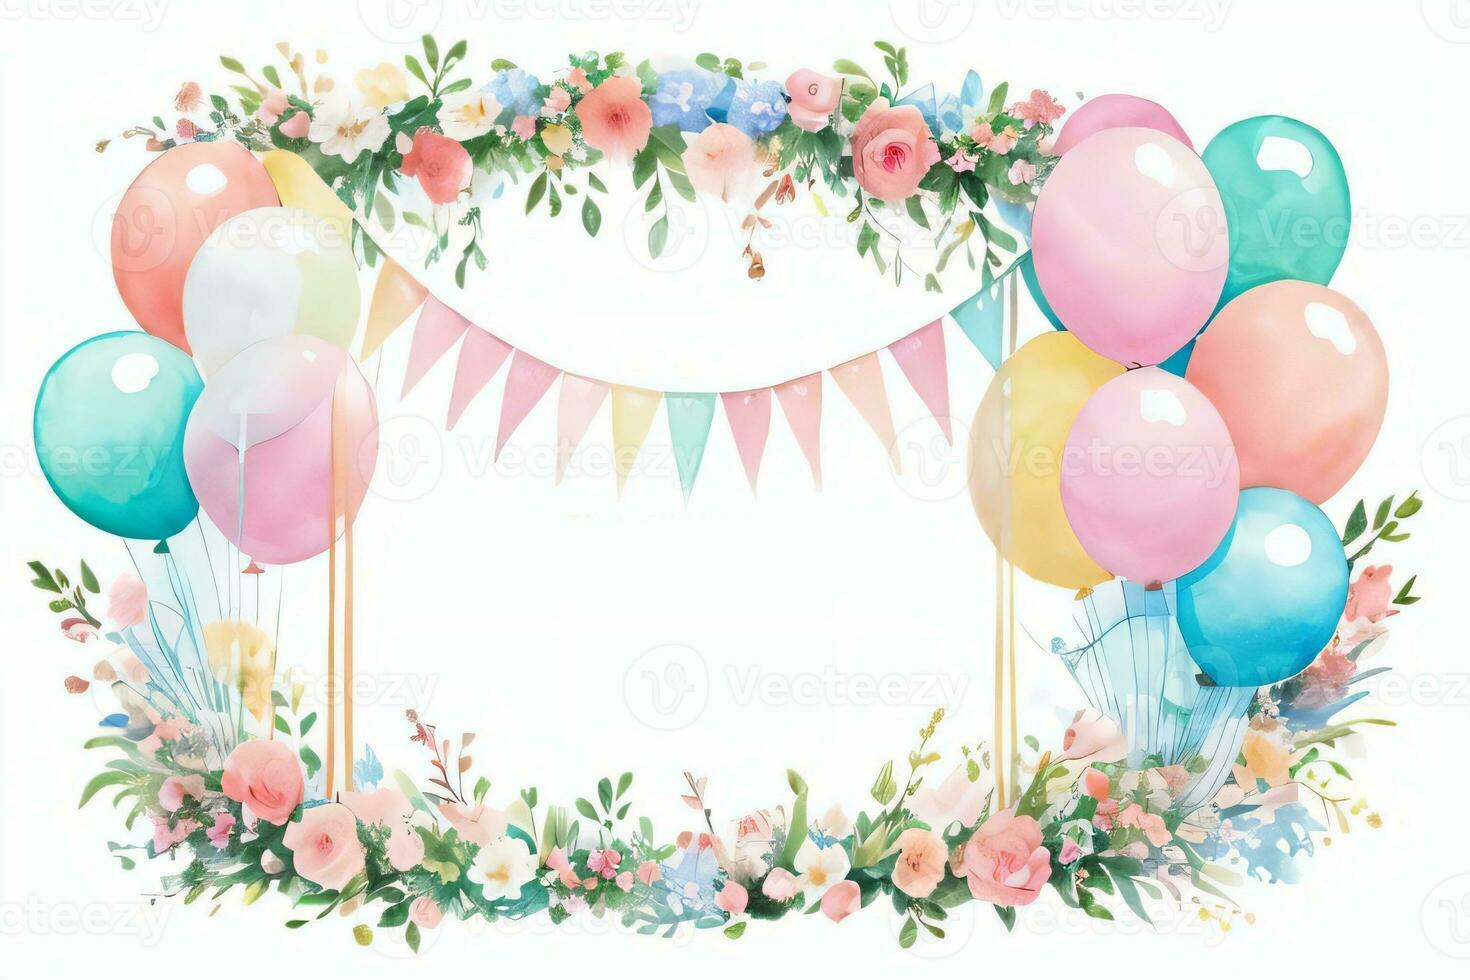 waterverf bruiloft of verjaardag groeten kaart achtergrond met ballons en bloemen foto